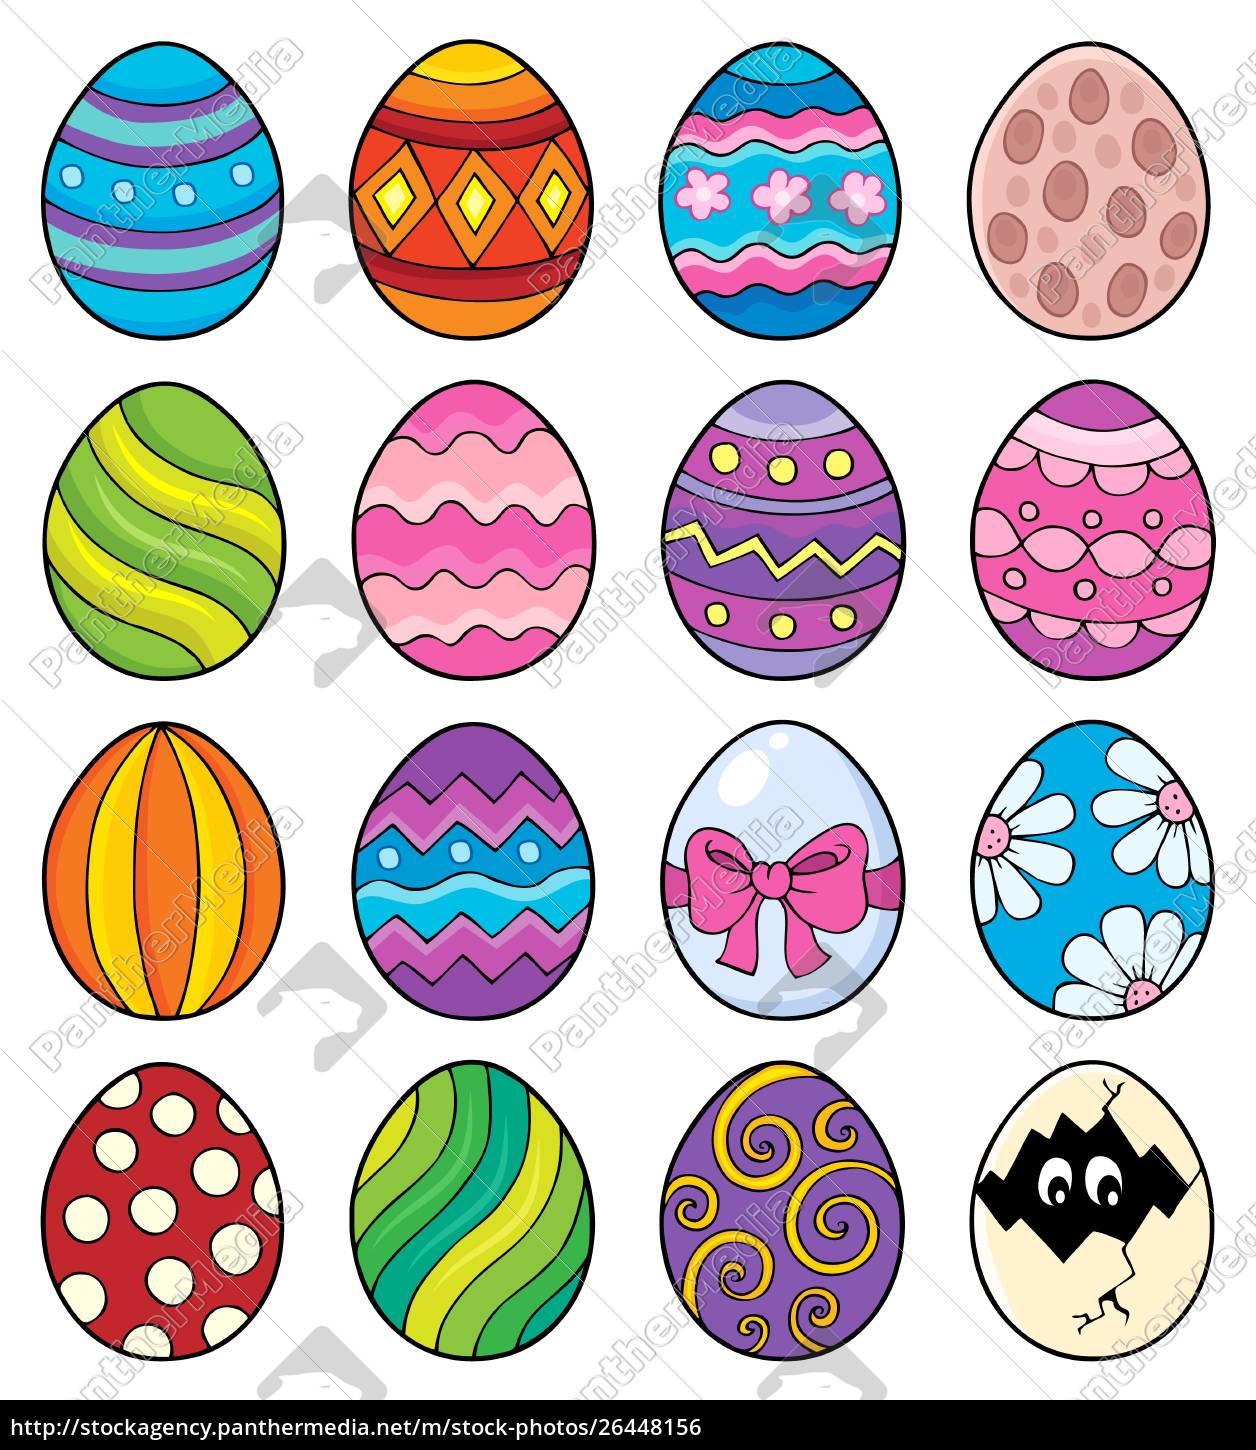 Set tema uova di Pasqua decorative 1 - Stockphoto #26448156